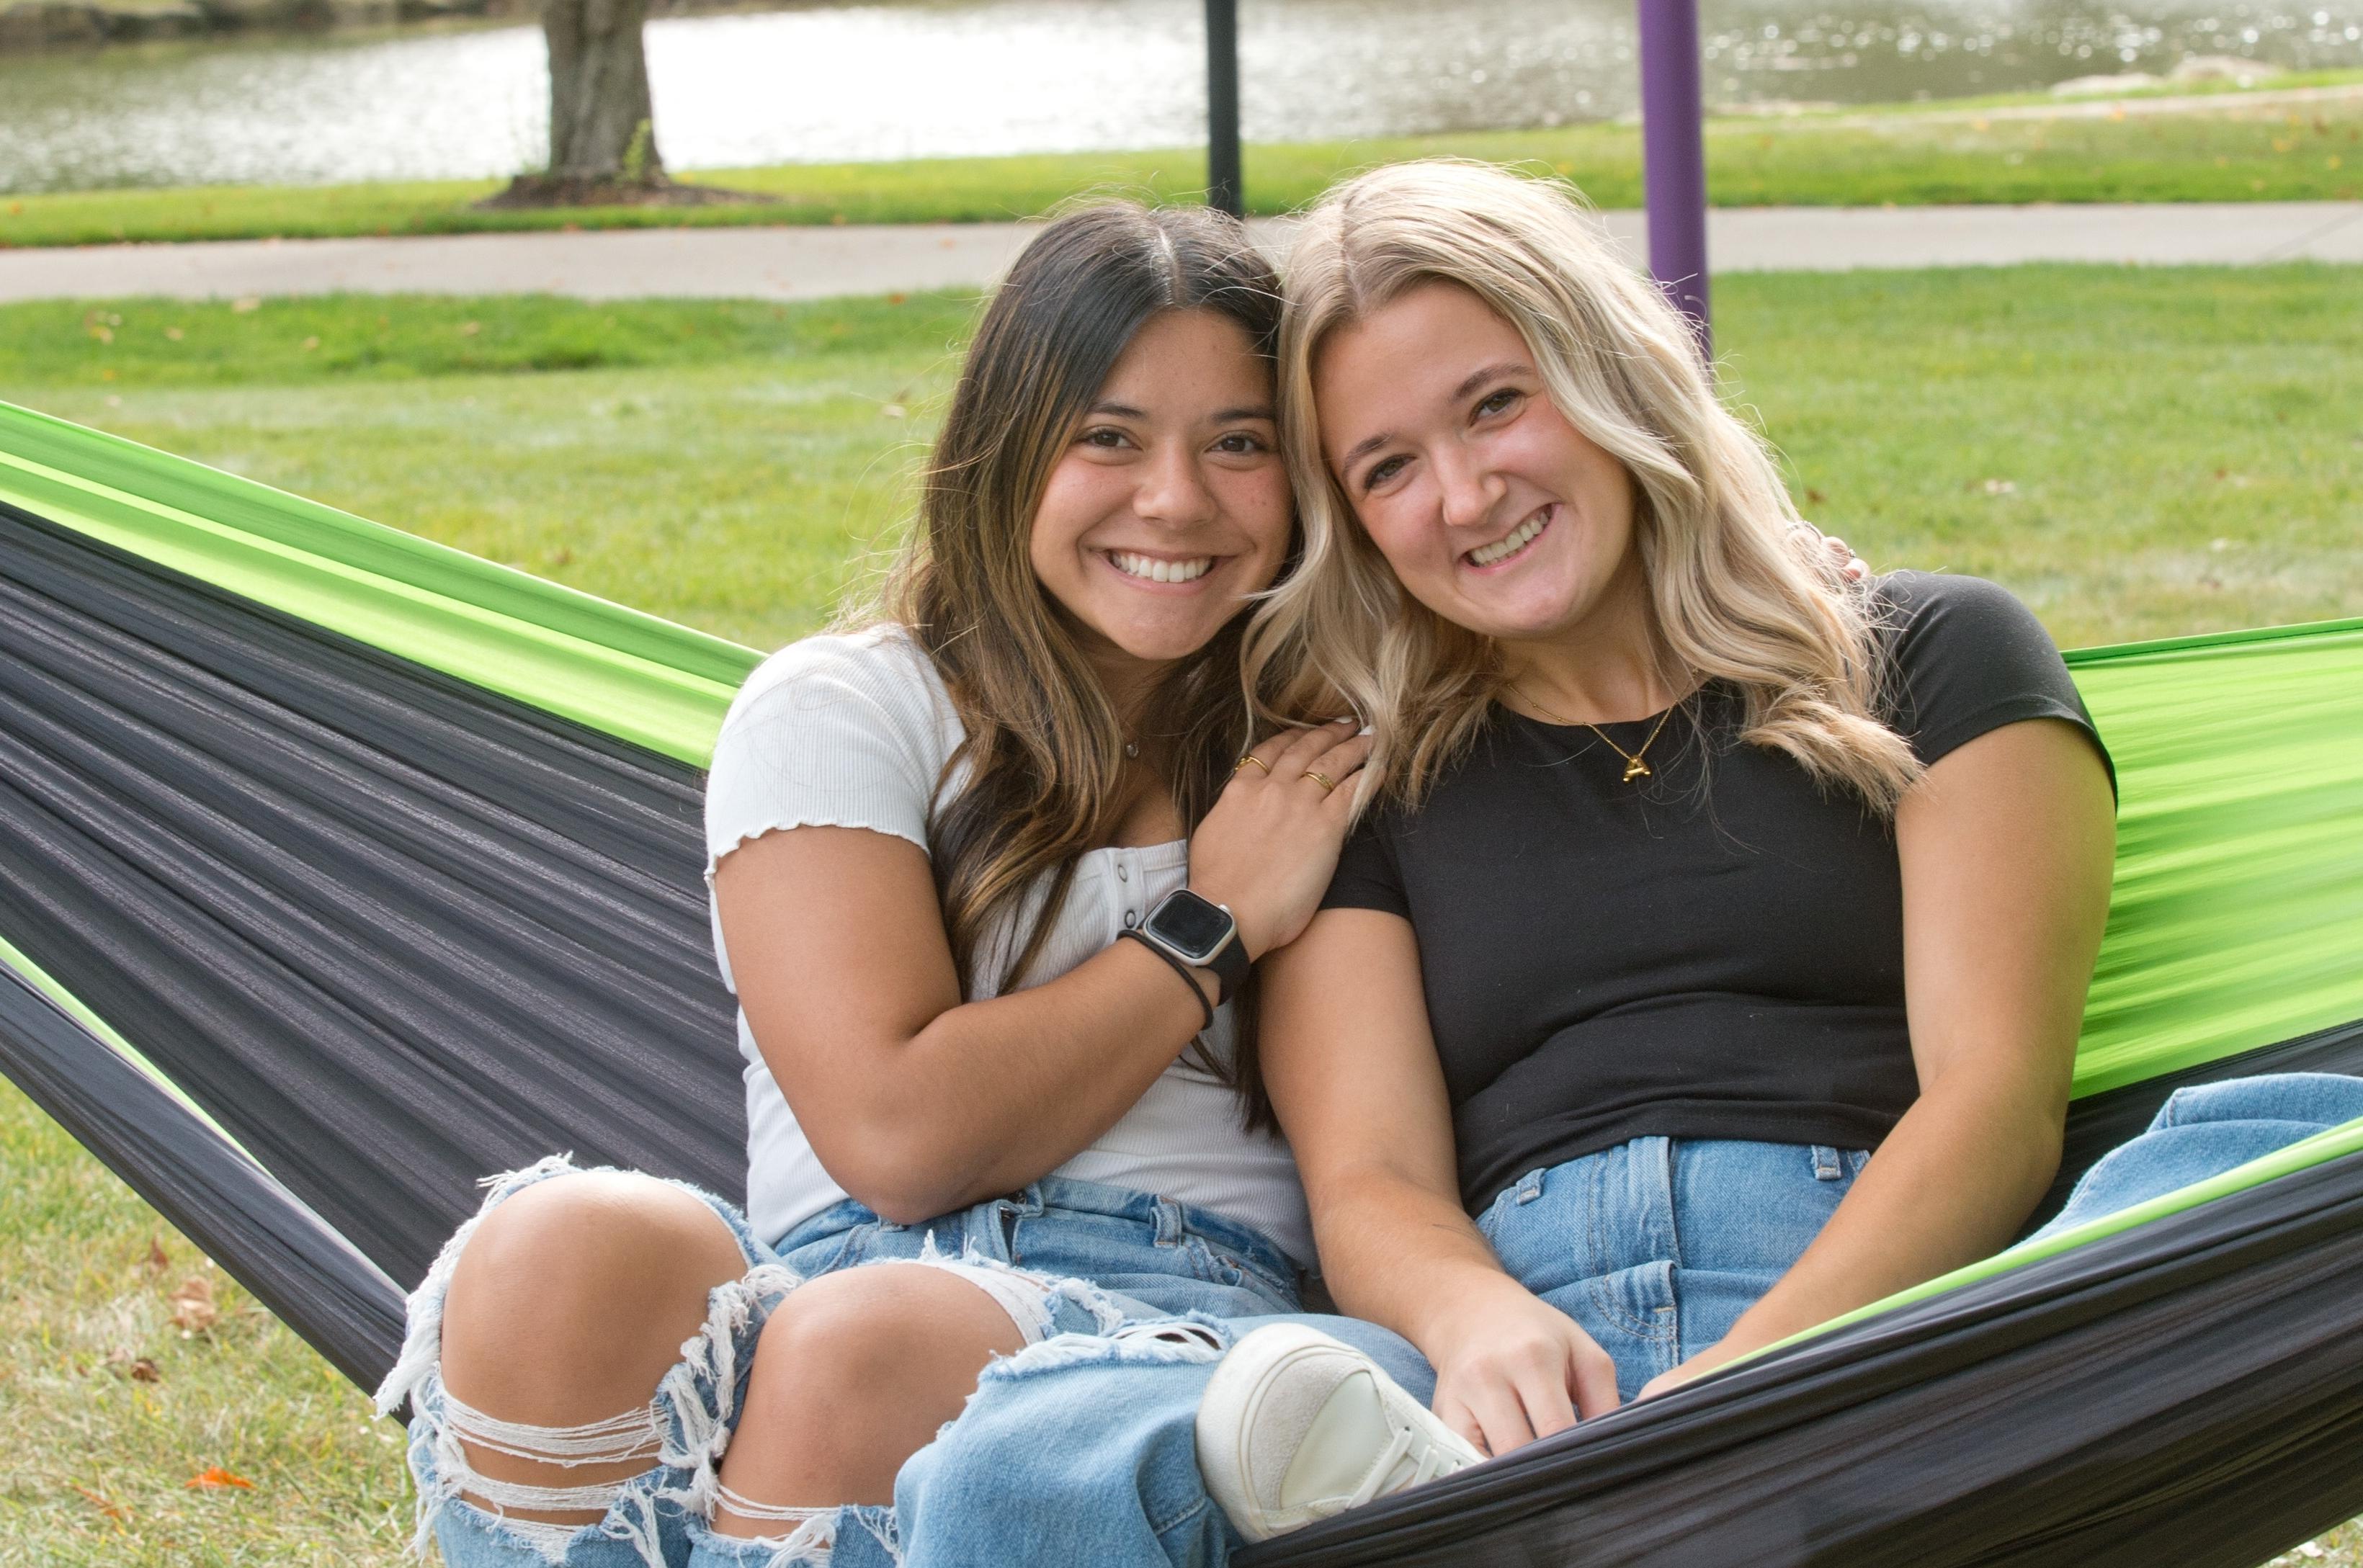 山 Union students smiling on a hammock by the lakes.